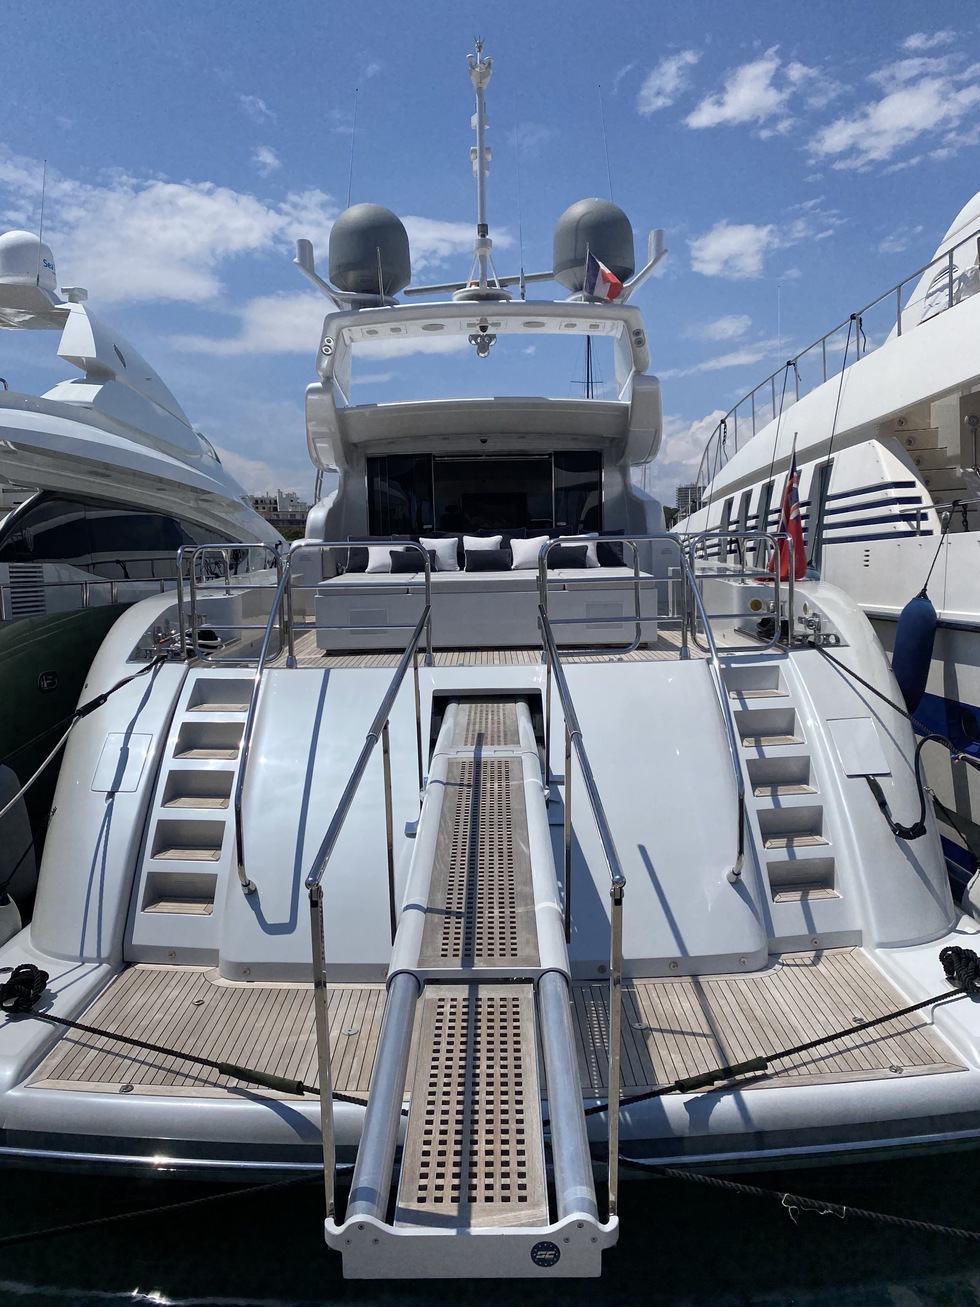 leopard yachts 31m